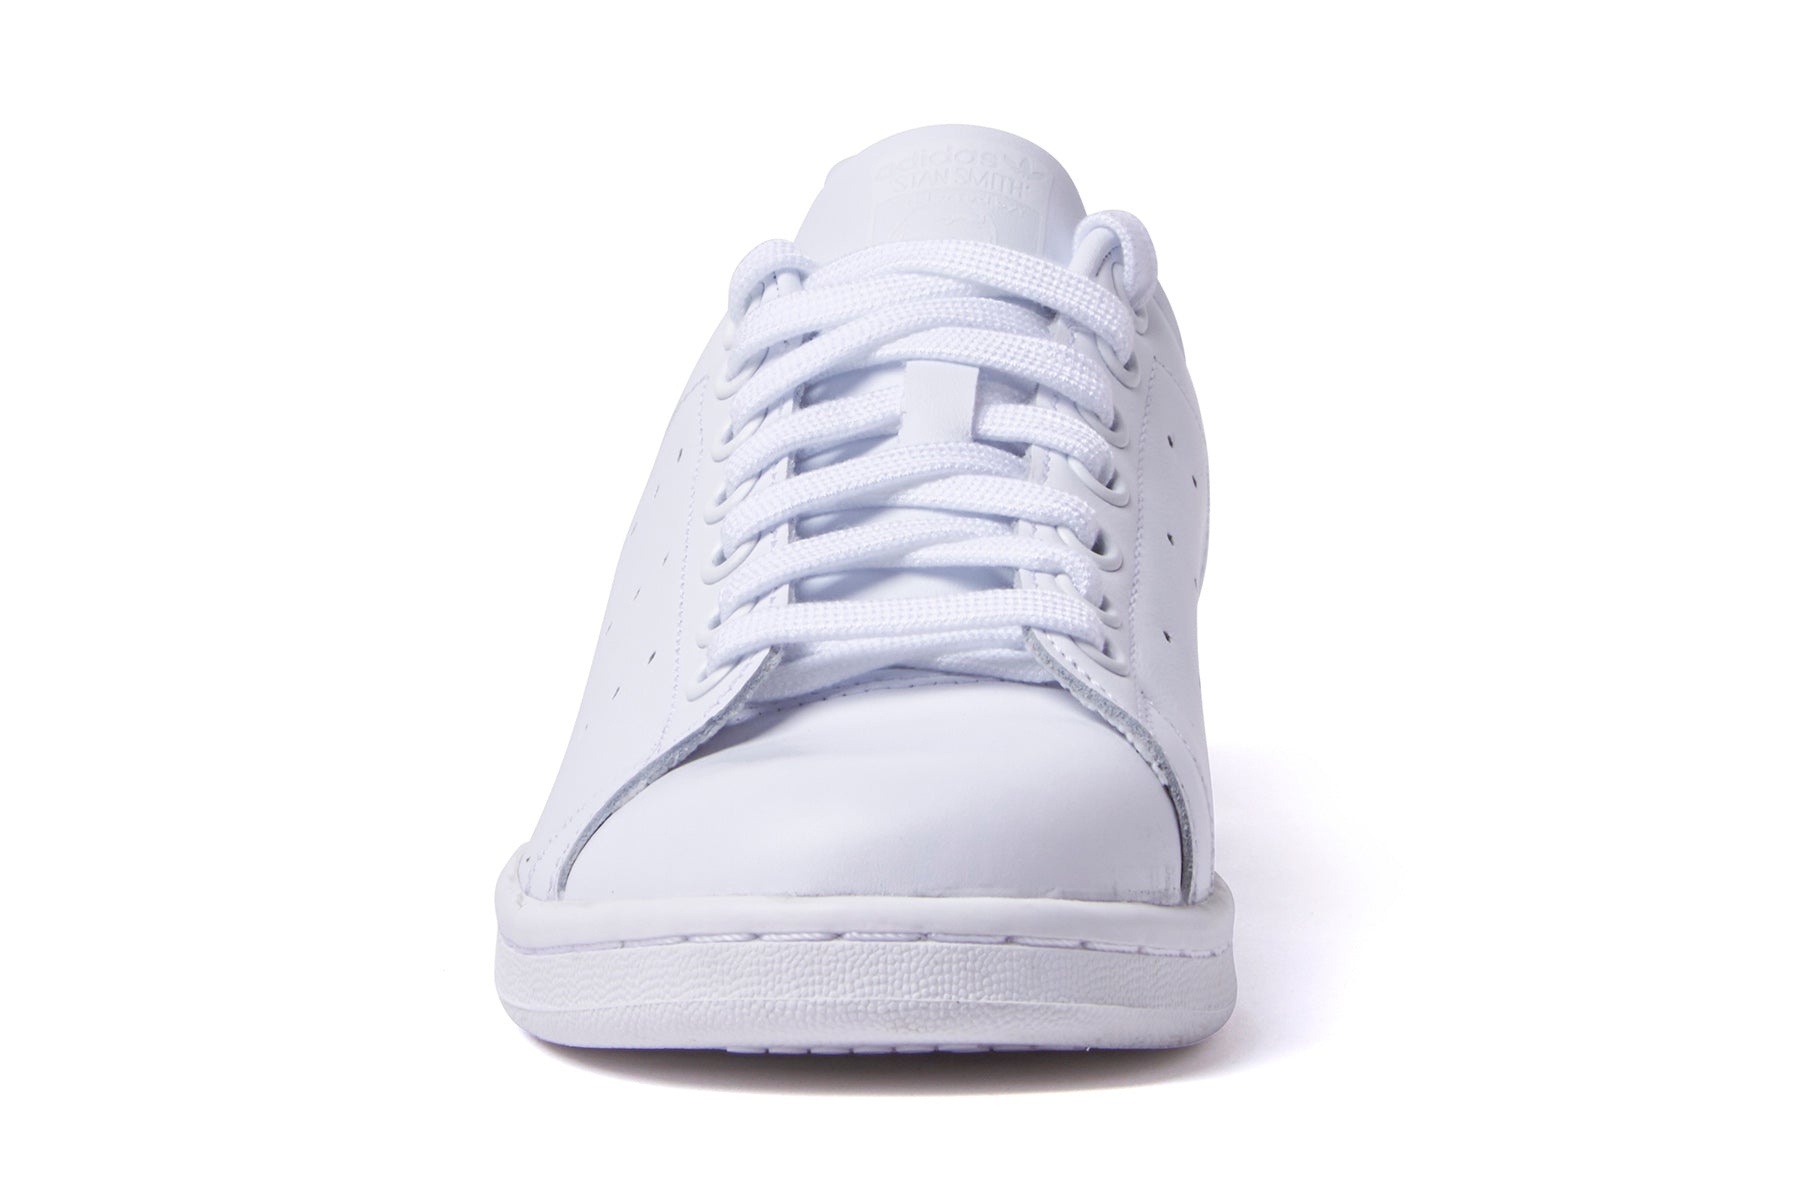 Adidas Stan Smith - White/White/White